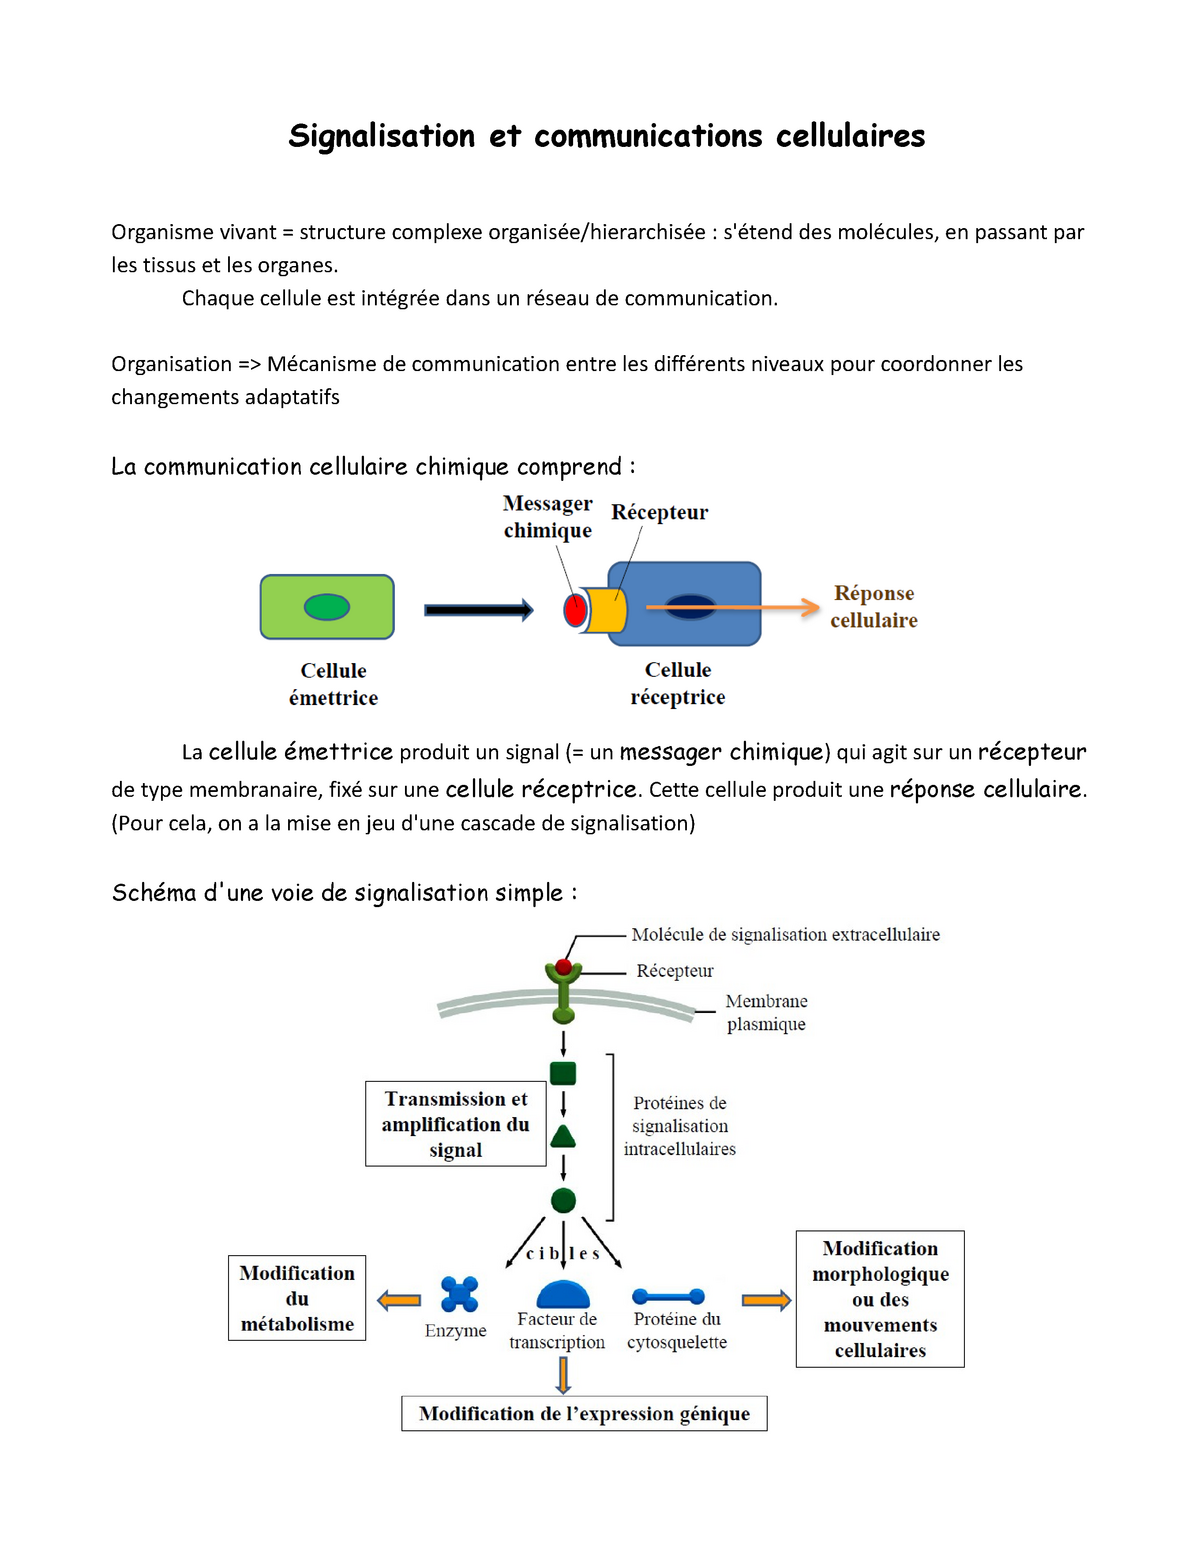 1) Les récepteurs couplés aux canaux ioniques [11. Introduction à la  signalisation cellulaire [biologie cellulaire]]